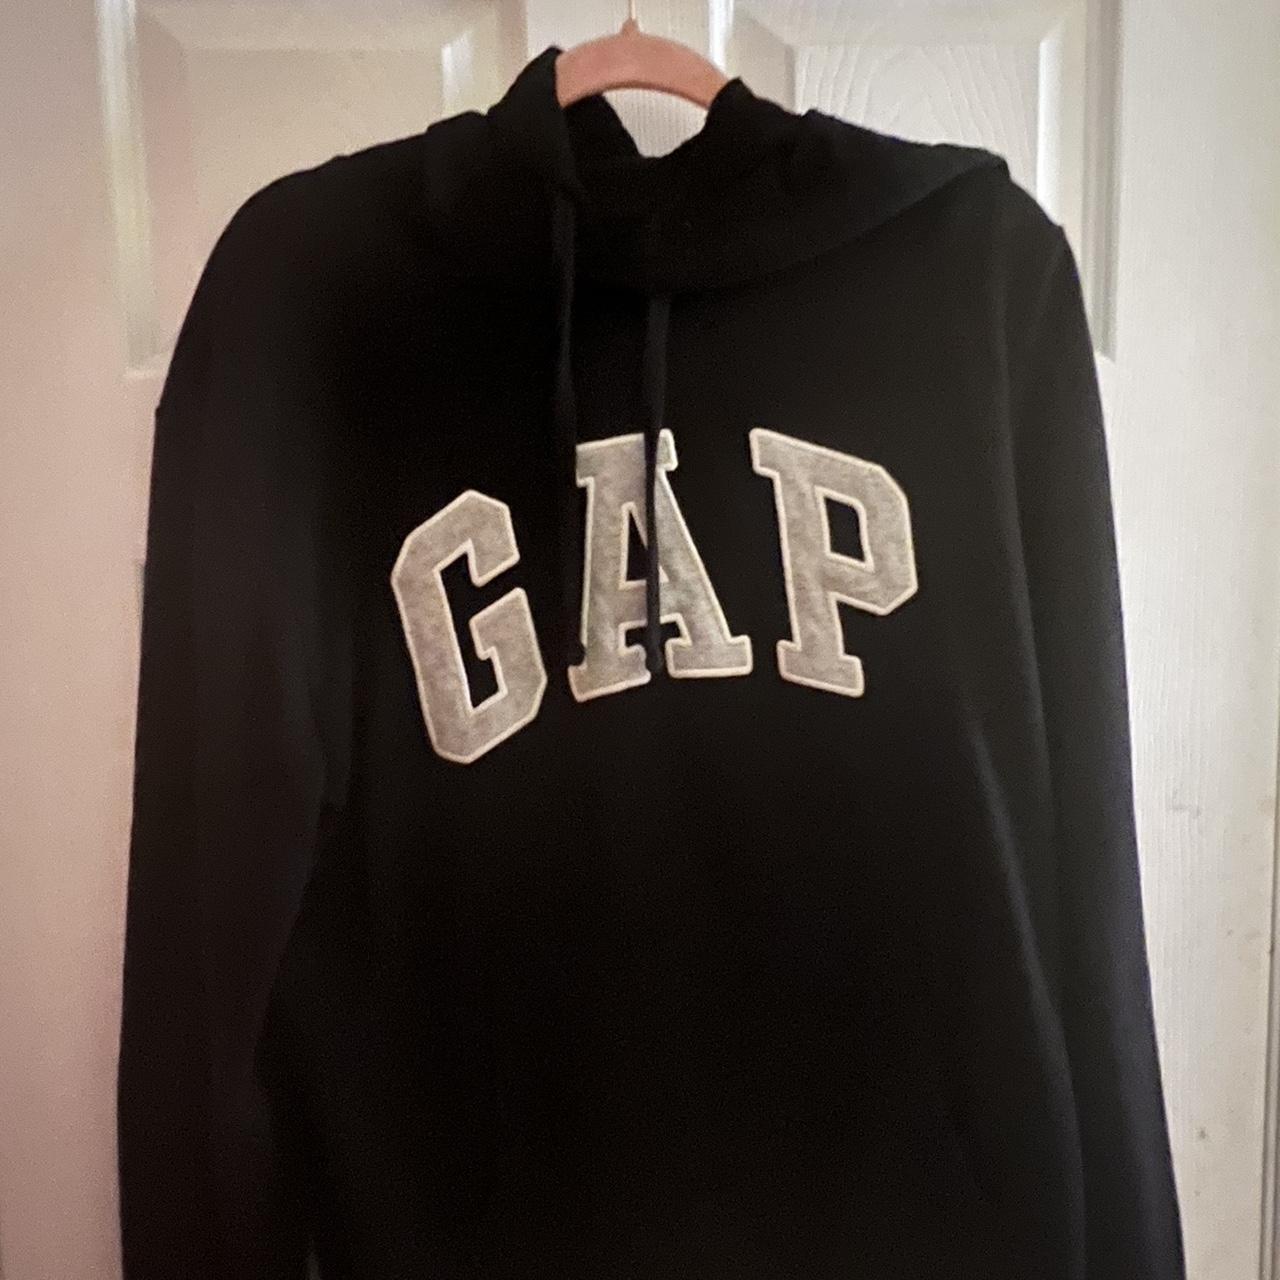 black gap hoodie no stains or flaws #Gap #hoodie #black - Depop